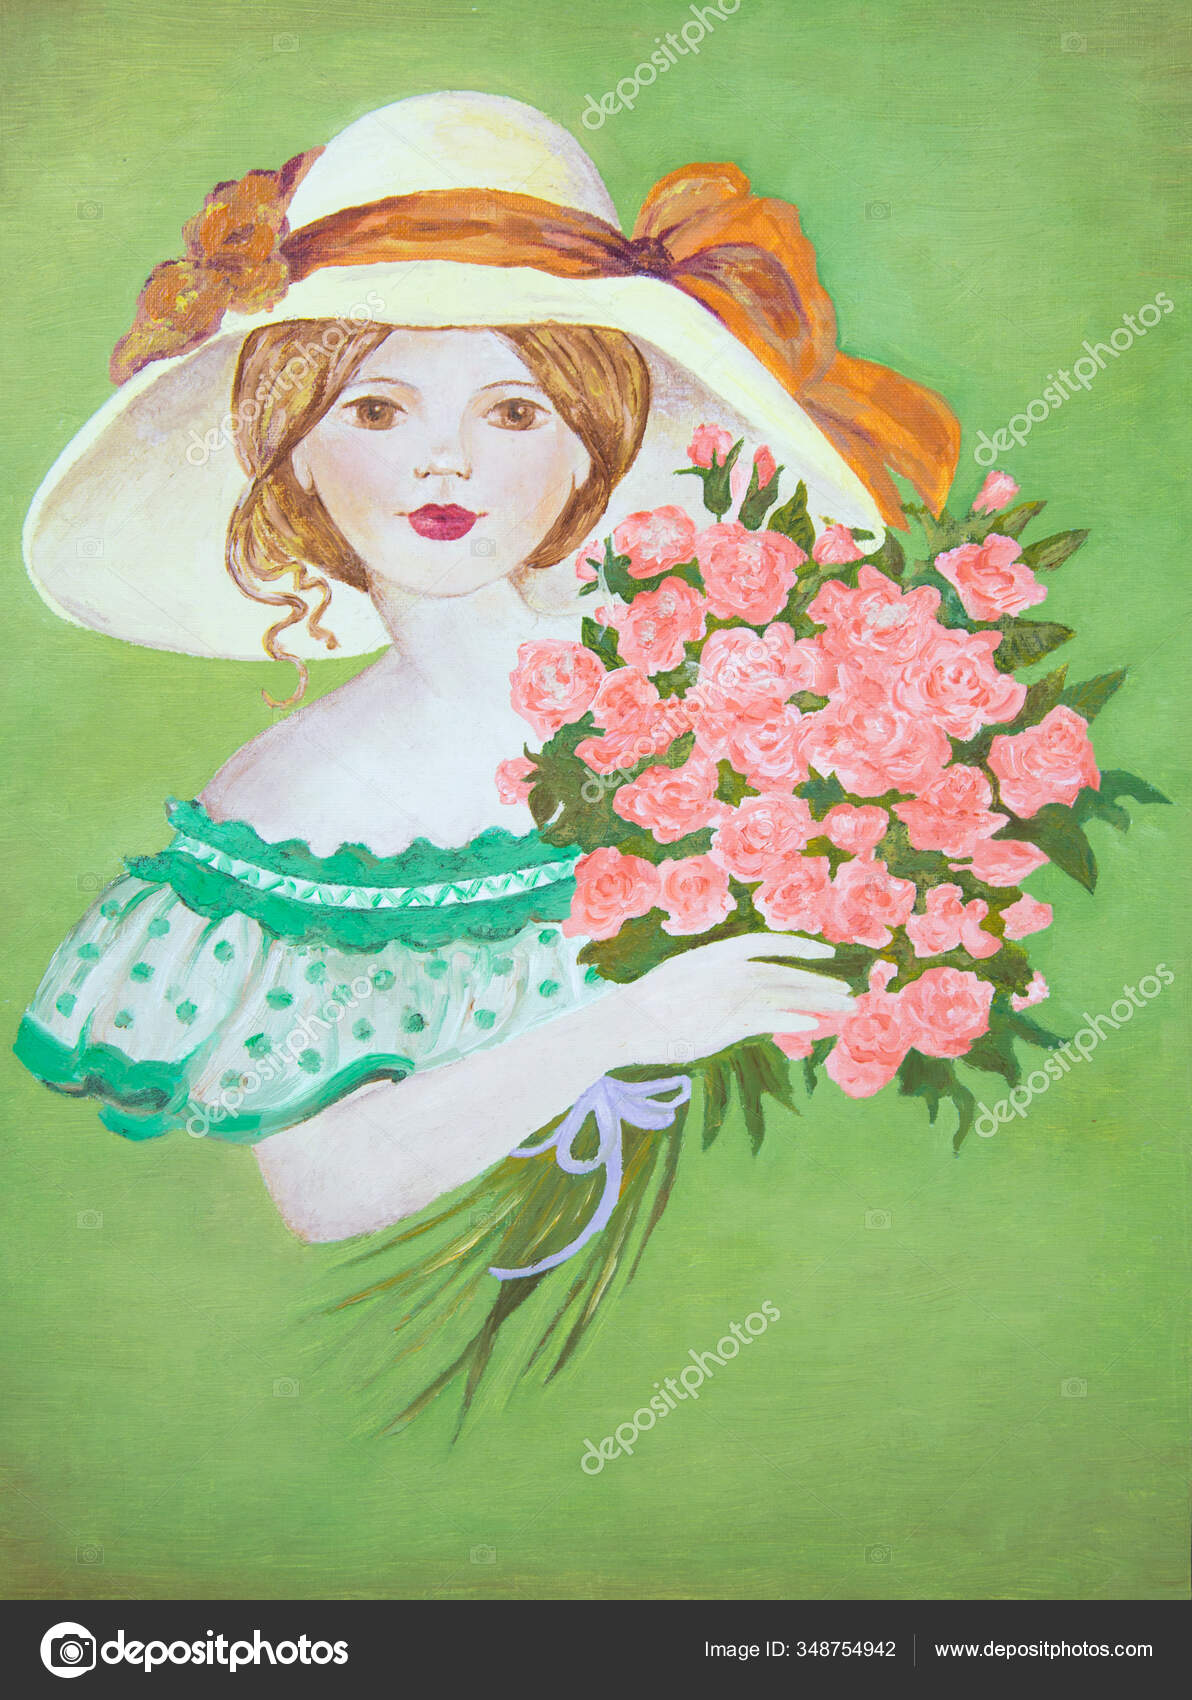 一个头戴白色帽子背景为绿色的红玫瑰束的小女孩的画像水彩画 图库照片 C Victor1153